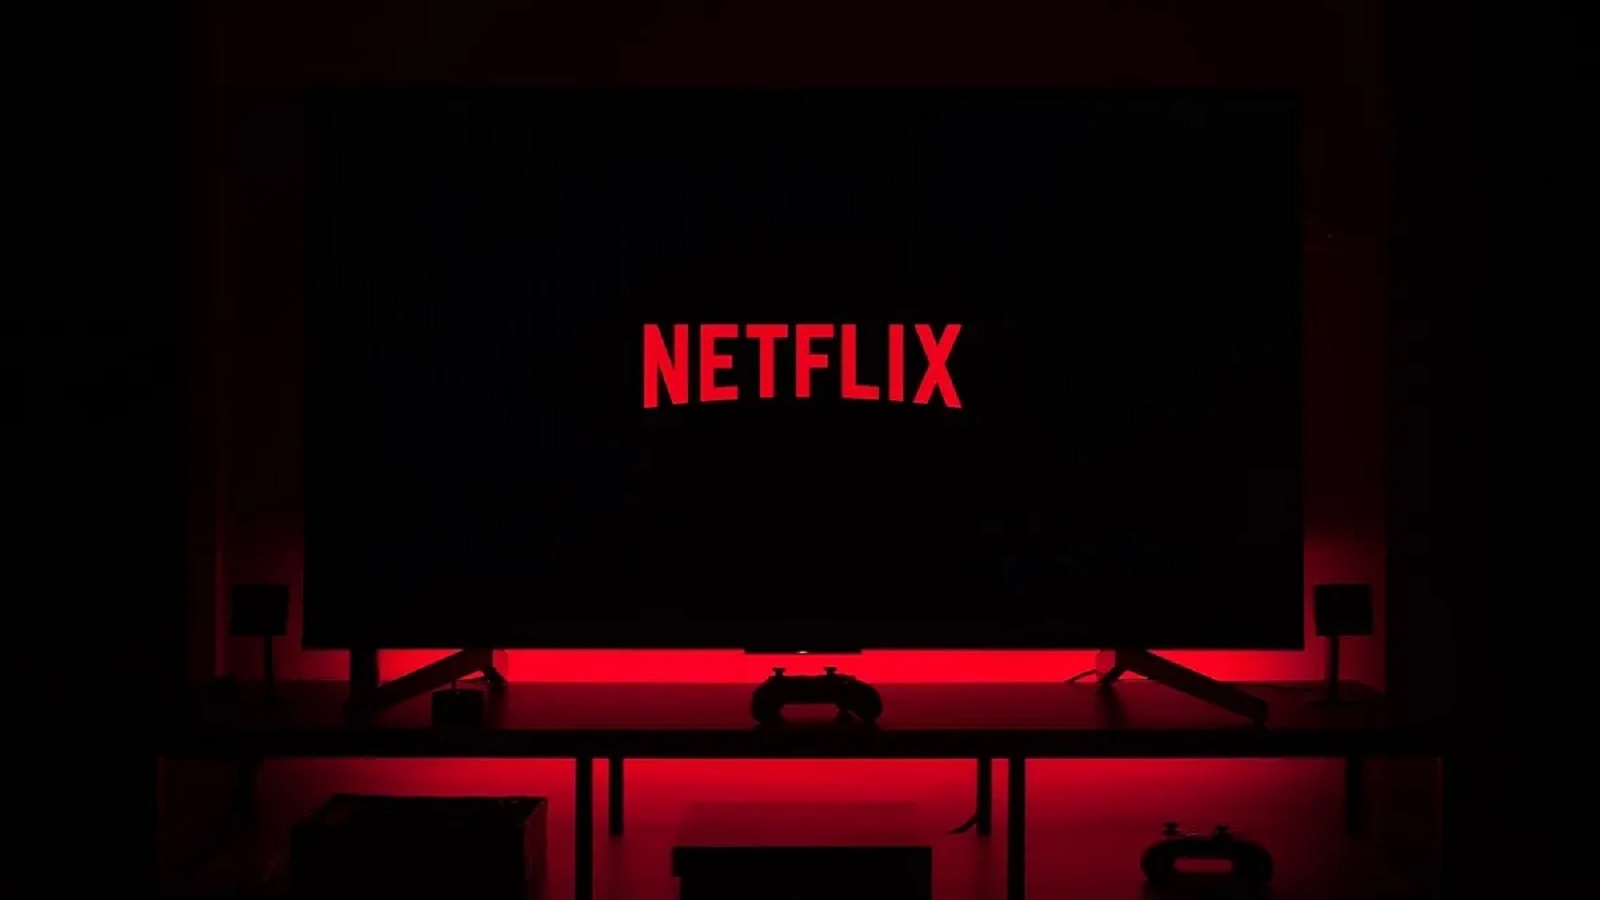 I codici segreti per sbloccare alcune categorie di Netflix